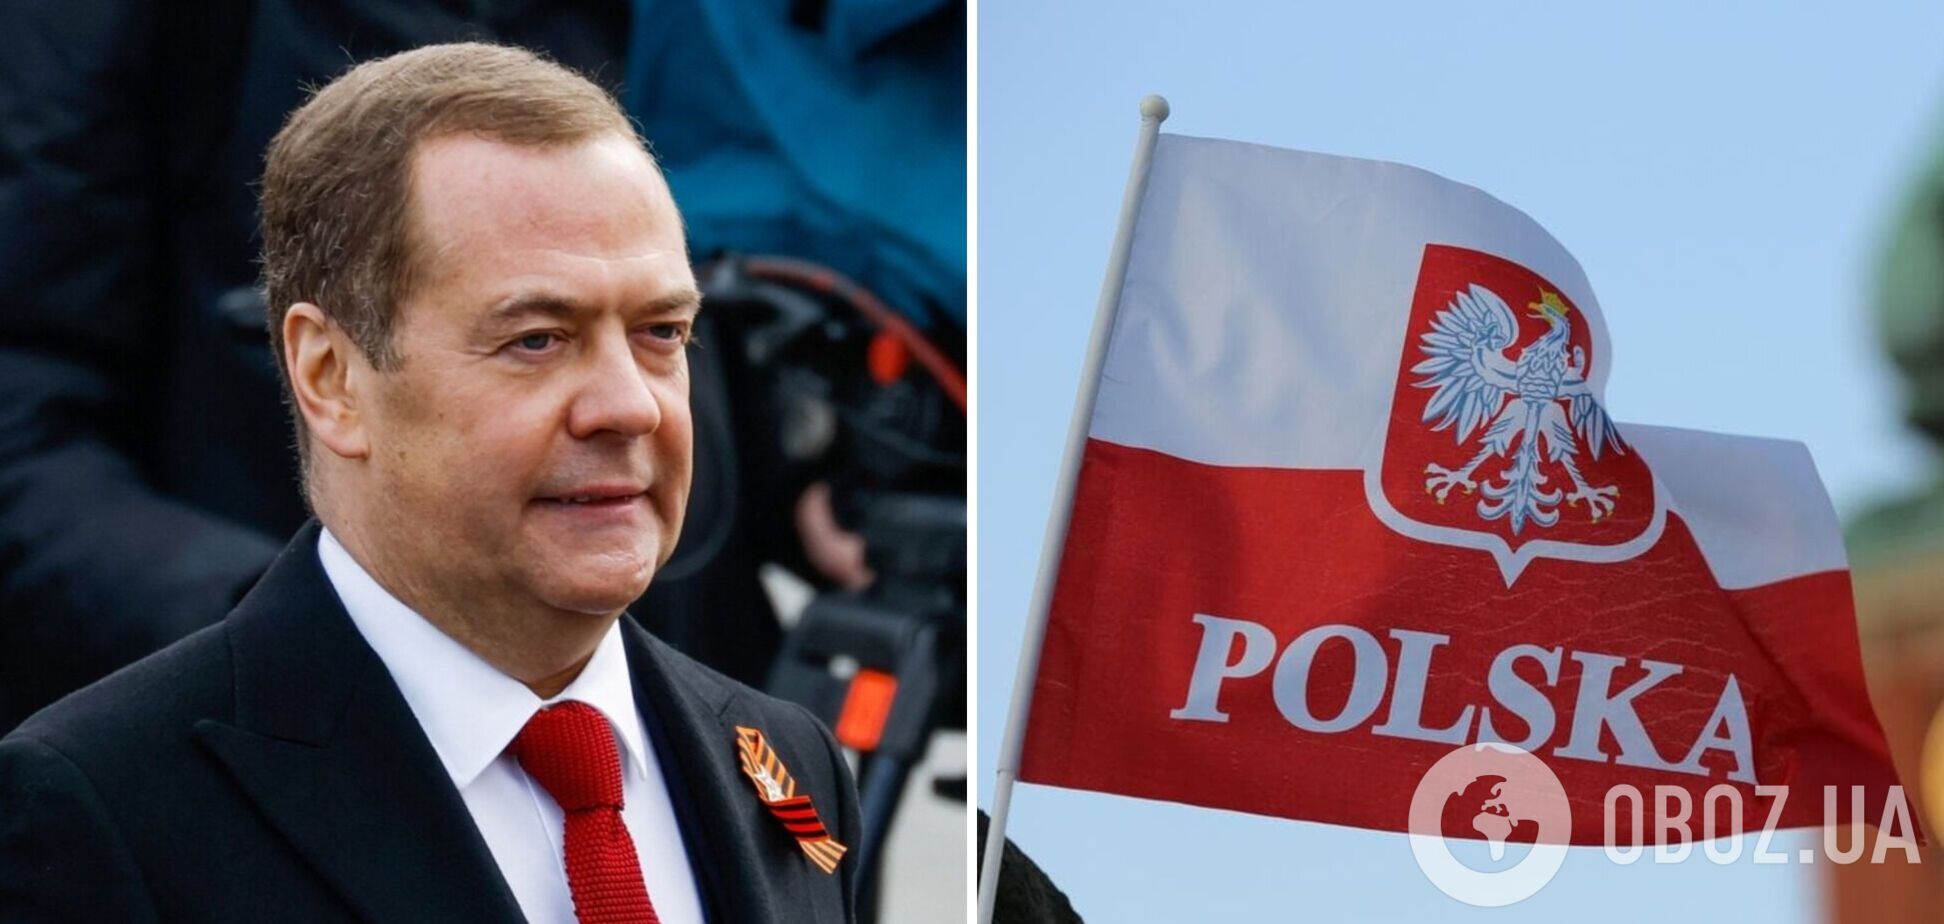 В Польше ответили Медведеву на угрозы: смешивать алкоголь и наркотики небезопасно, но продолжайте